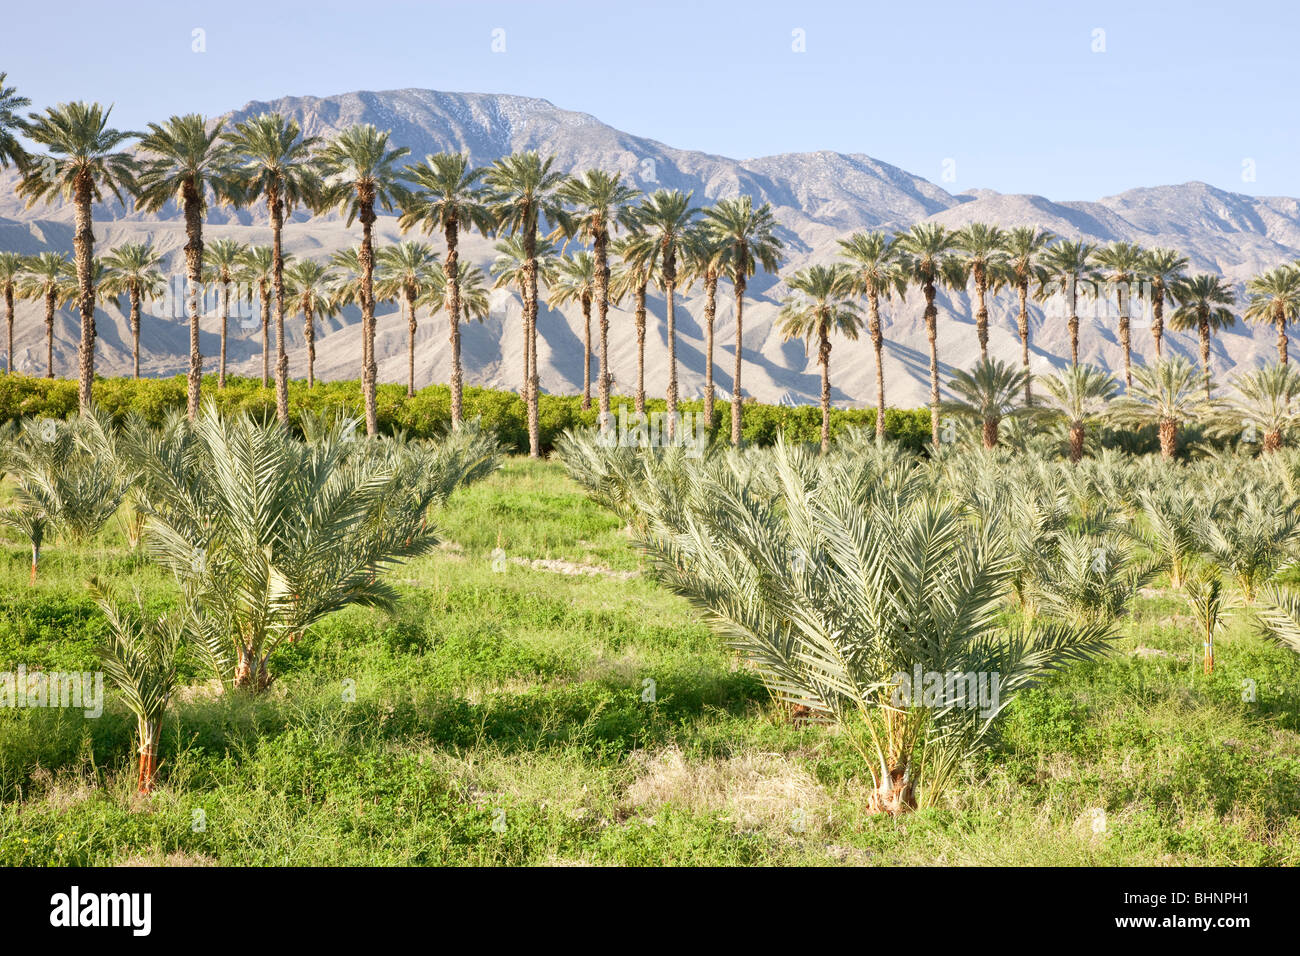 Fecha plantación de palma, palmeras jóvenes en primer plano, huerto de cítricos en segundo plano. Foto de stock